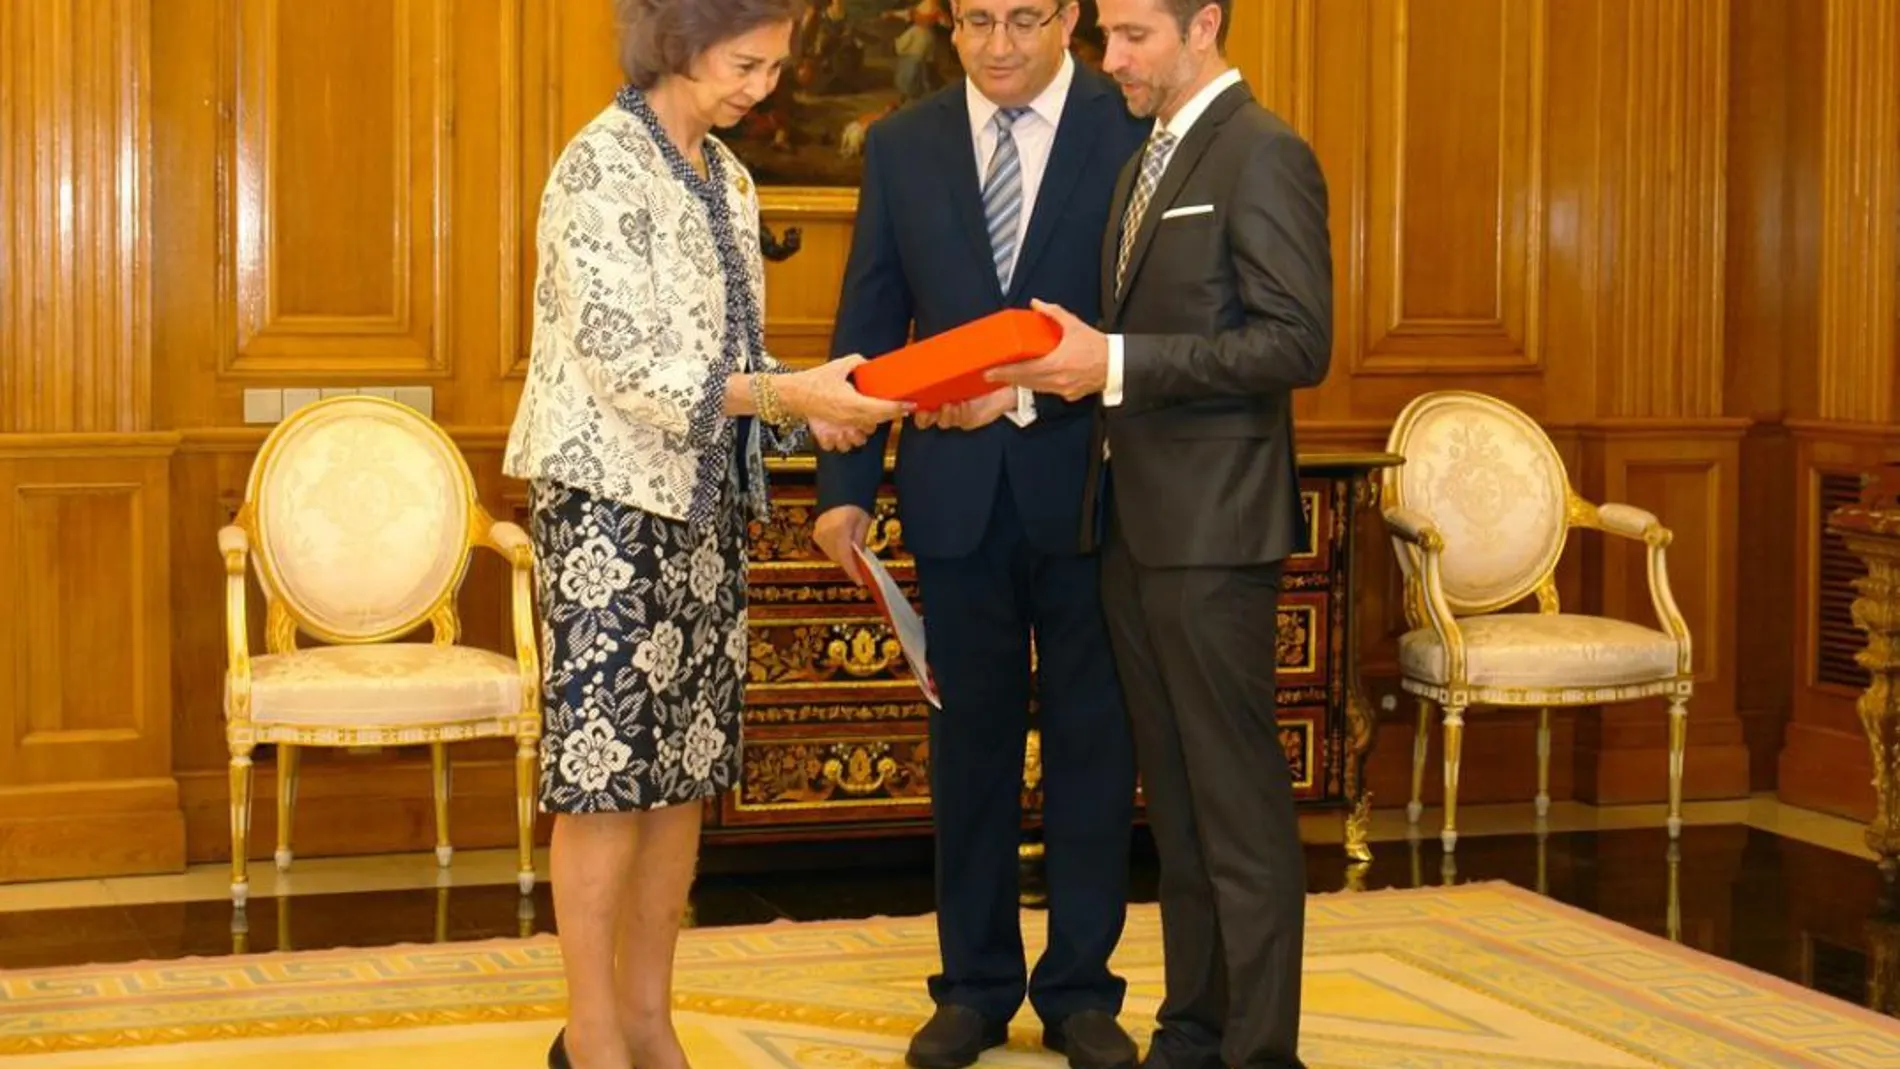 La Reina Emérita recibe el premio en el Palacio madrileño de manos del presidente de la organización en Castilla y León, Máximo Blanco Morán, y el secretario autonómico, Leandro Roldán Maza.